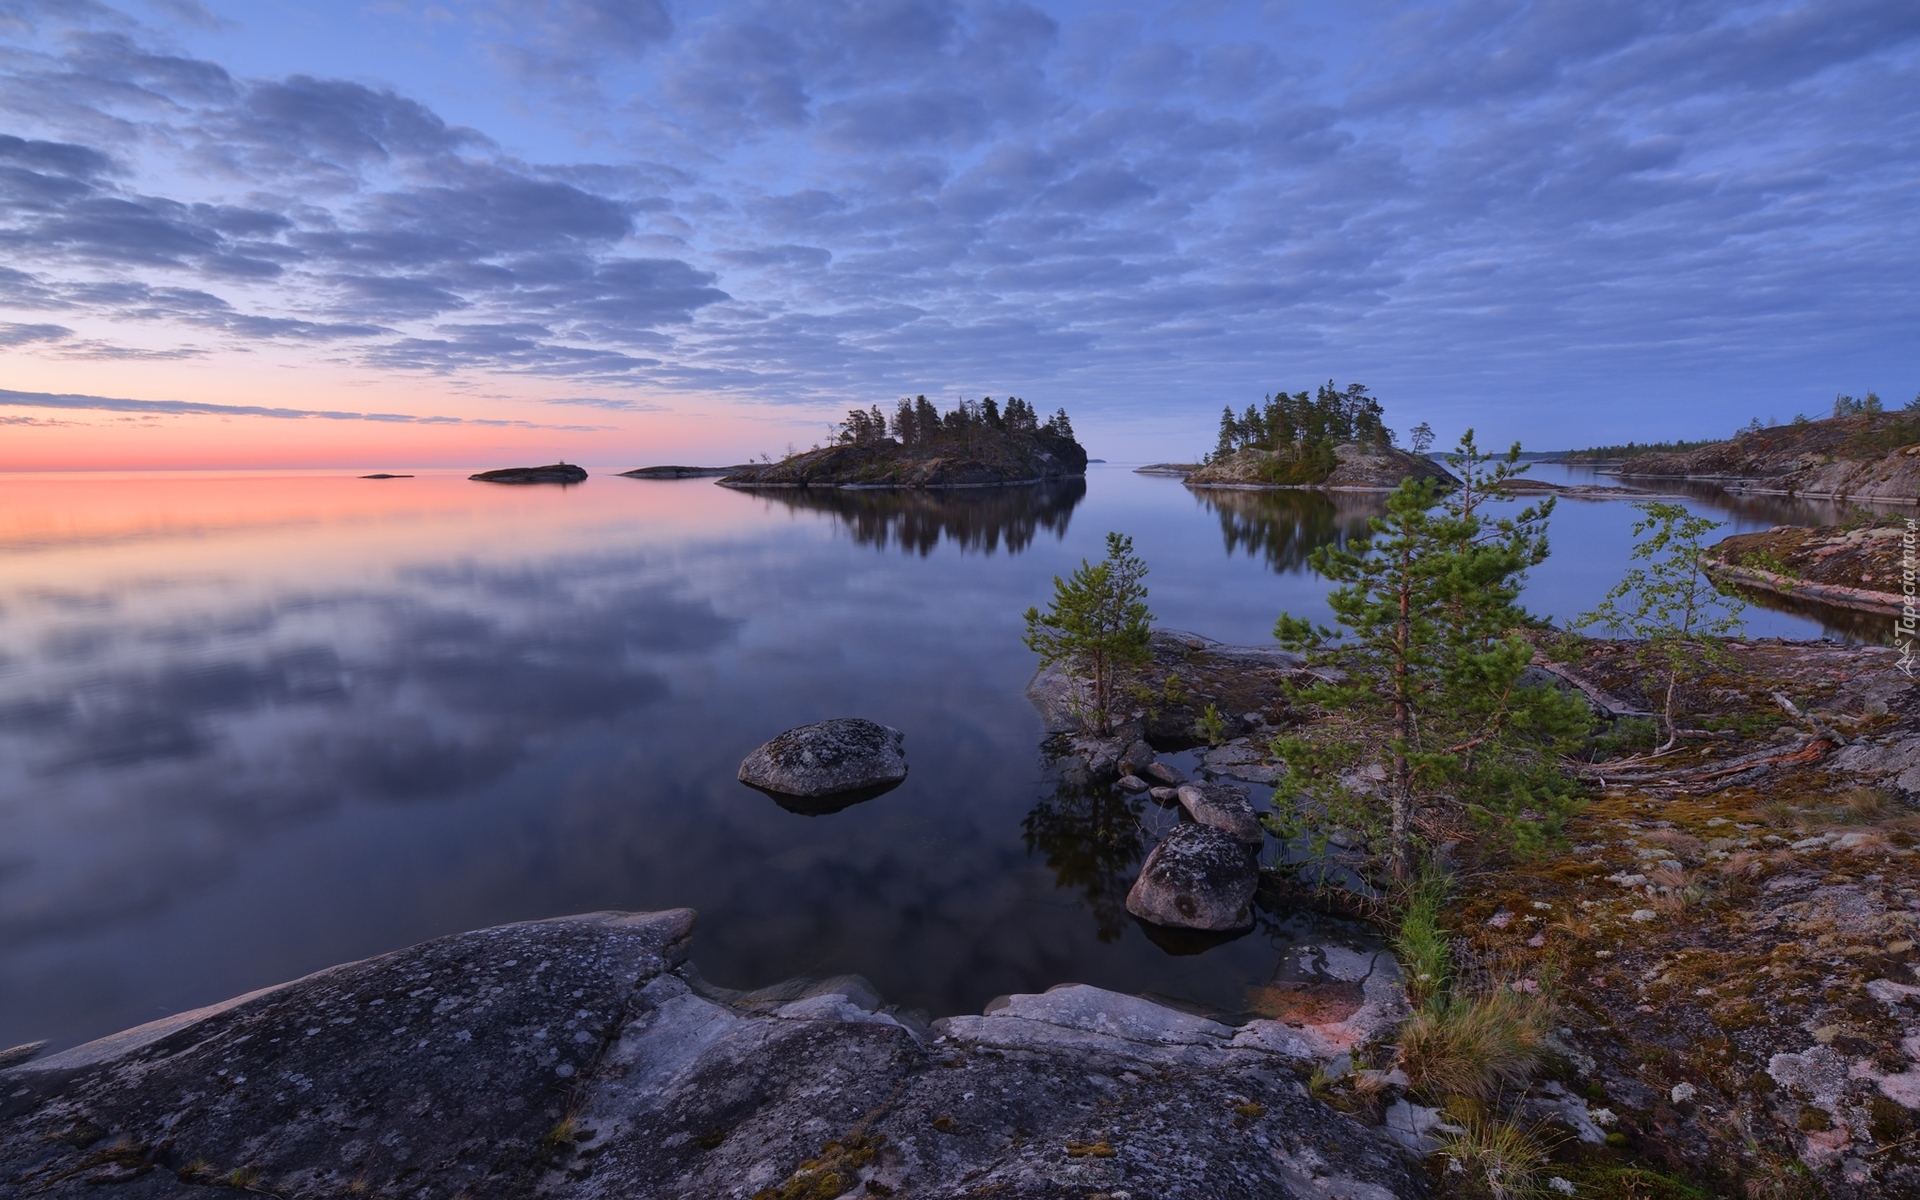 Jezioro Ładoga, Wysepki, Skały, Drzewa, Chmury, Zachód słońca, Karelia, Rosja